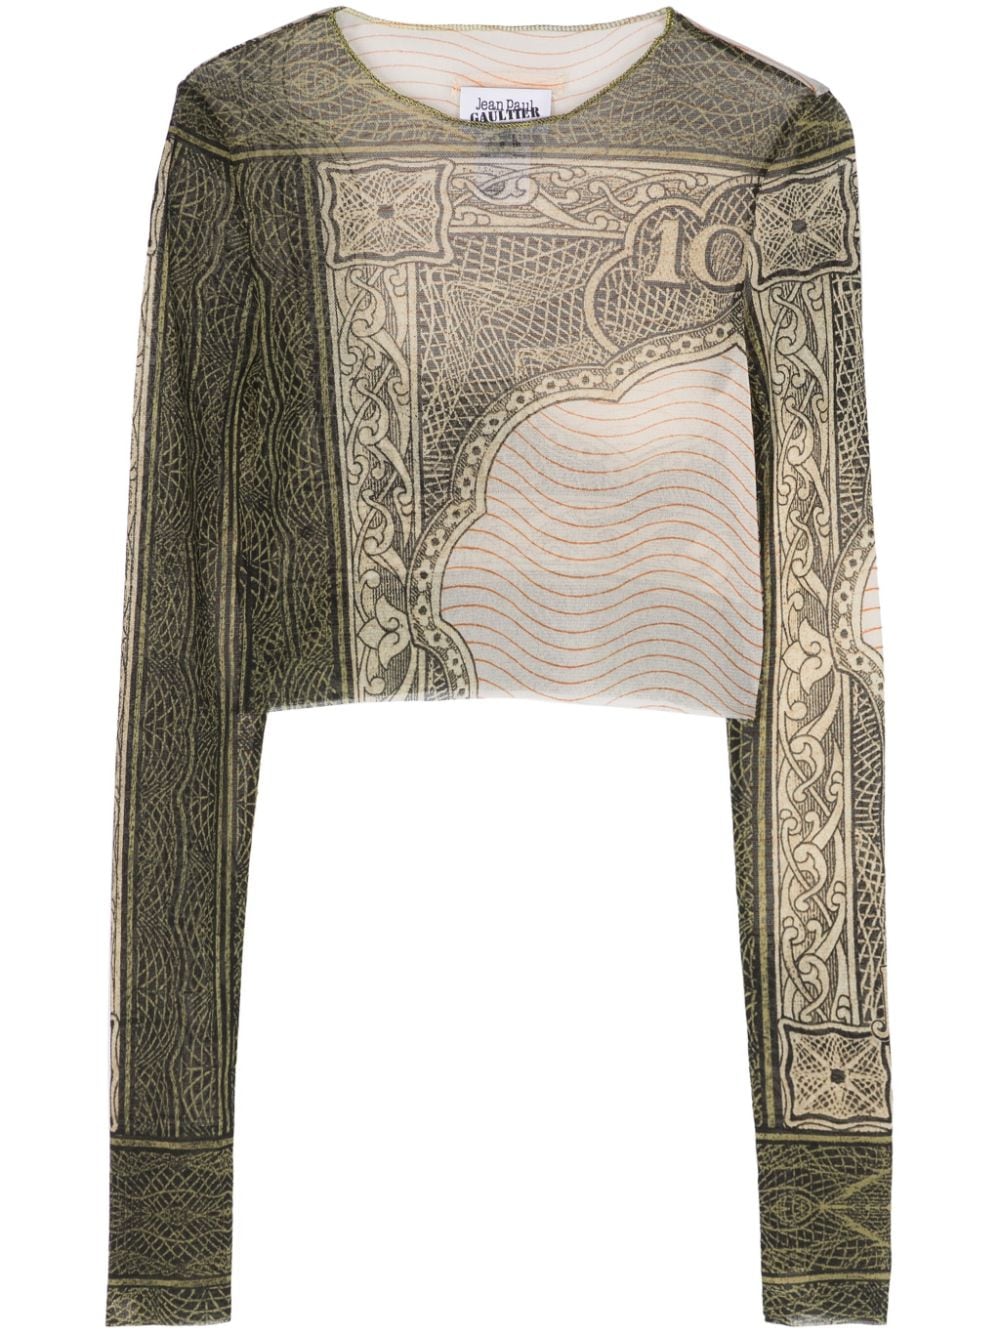 Jean Paul Gaultier Cropped T-shirt Beige